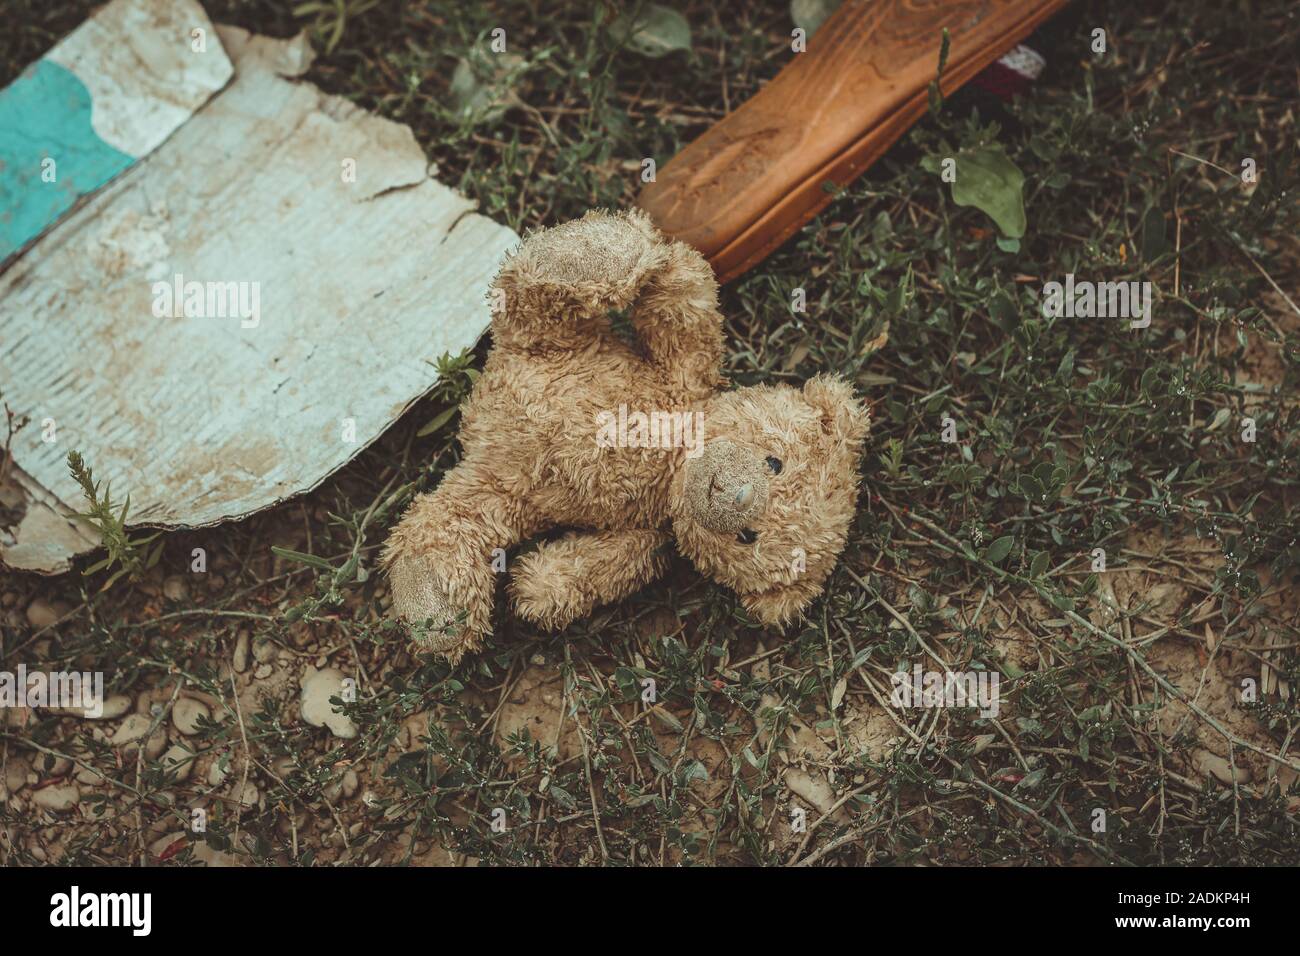 Alte Teddybär Festlegung auf dem schmutzigen Boden mit anderen Müll Stockfoto